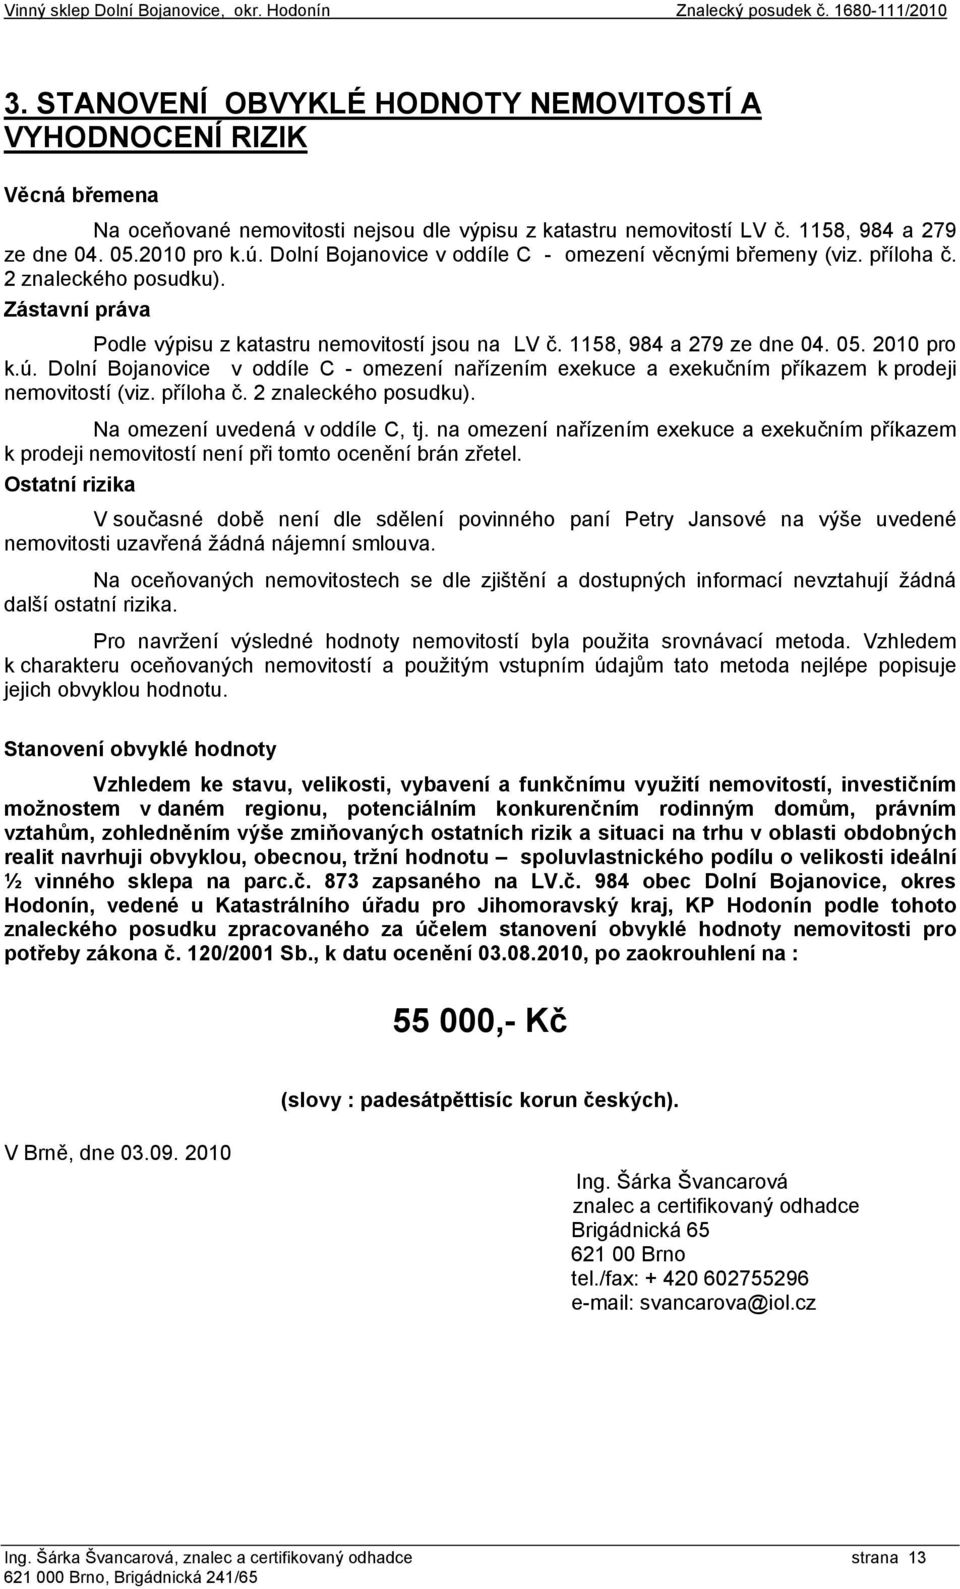 2010 pro k.ú. Dolní Bojanovice v oddíle C - omezení nařízením exekuce a exekučním příkazem k prodeji nemovitostí (viz. příloha č. 2 znaleckého posudku). Na omezení uvedená v oddíle C, tj.